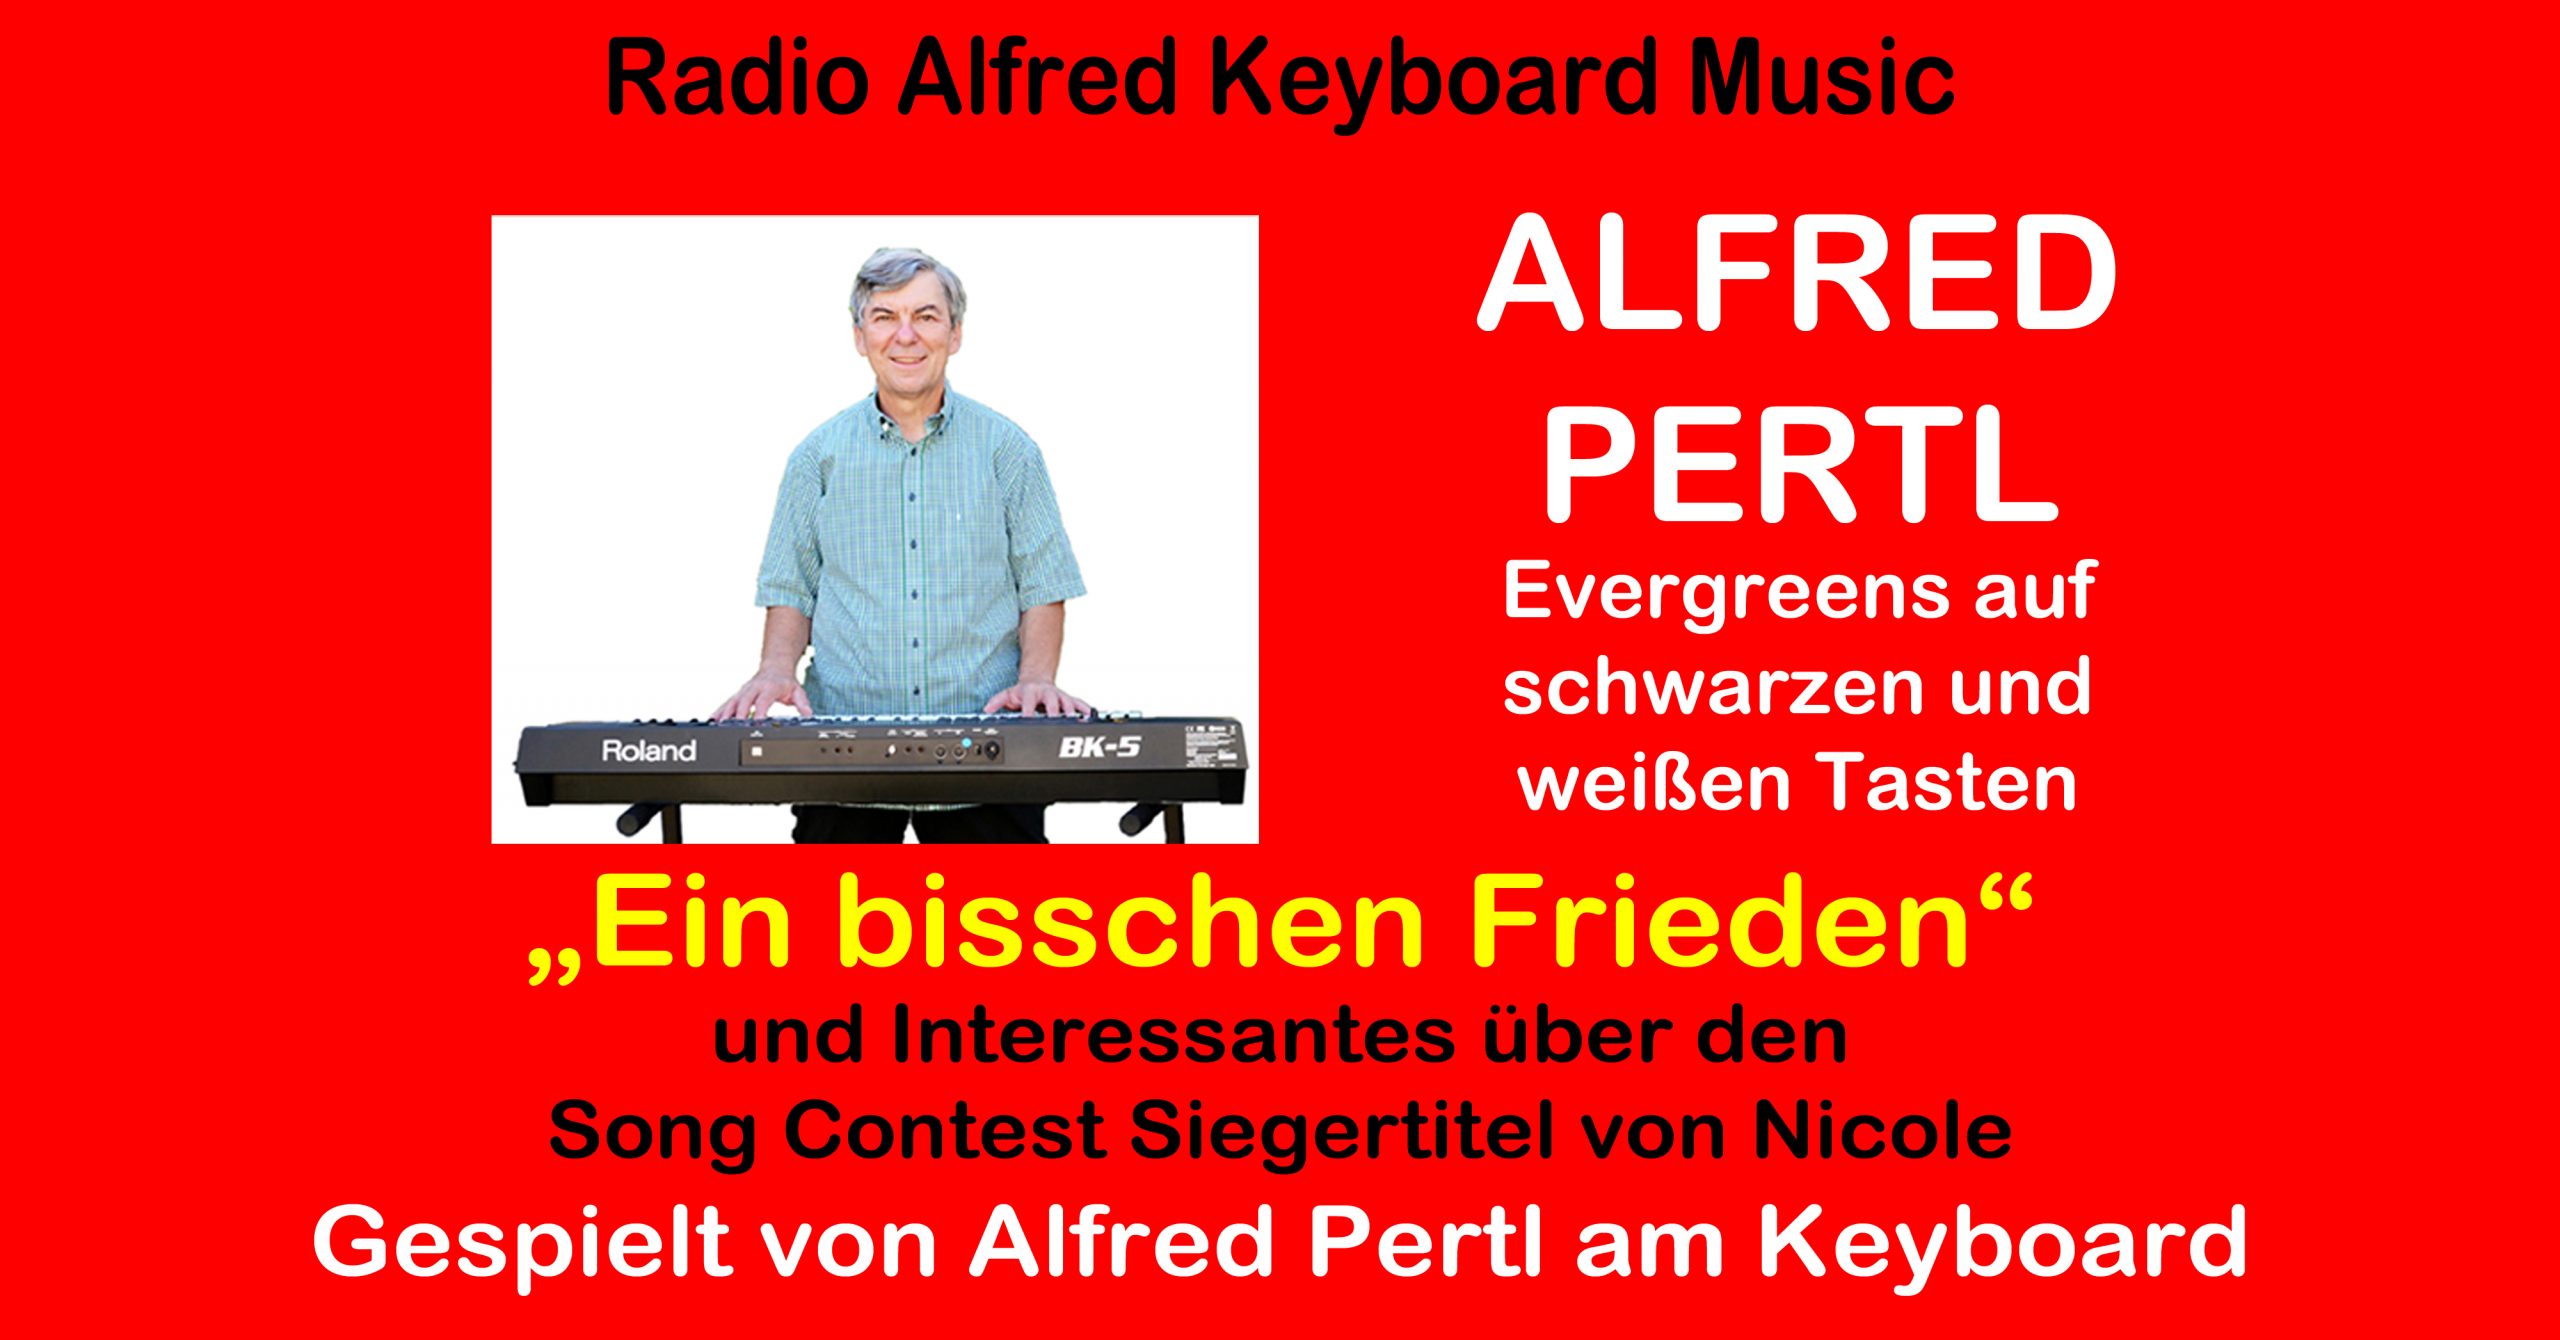 Ein bisschen Frieden – gespielt von Alfred Pertl am Keyboard